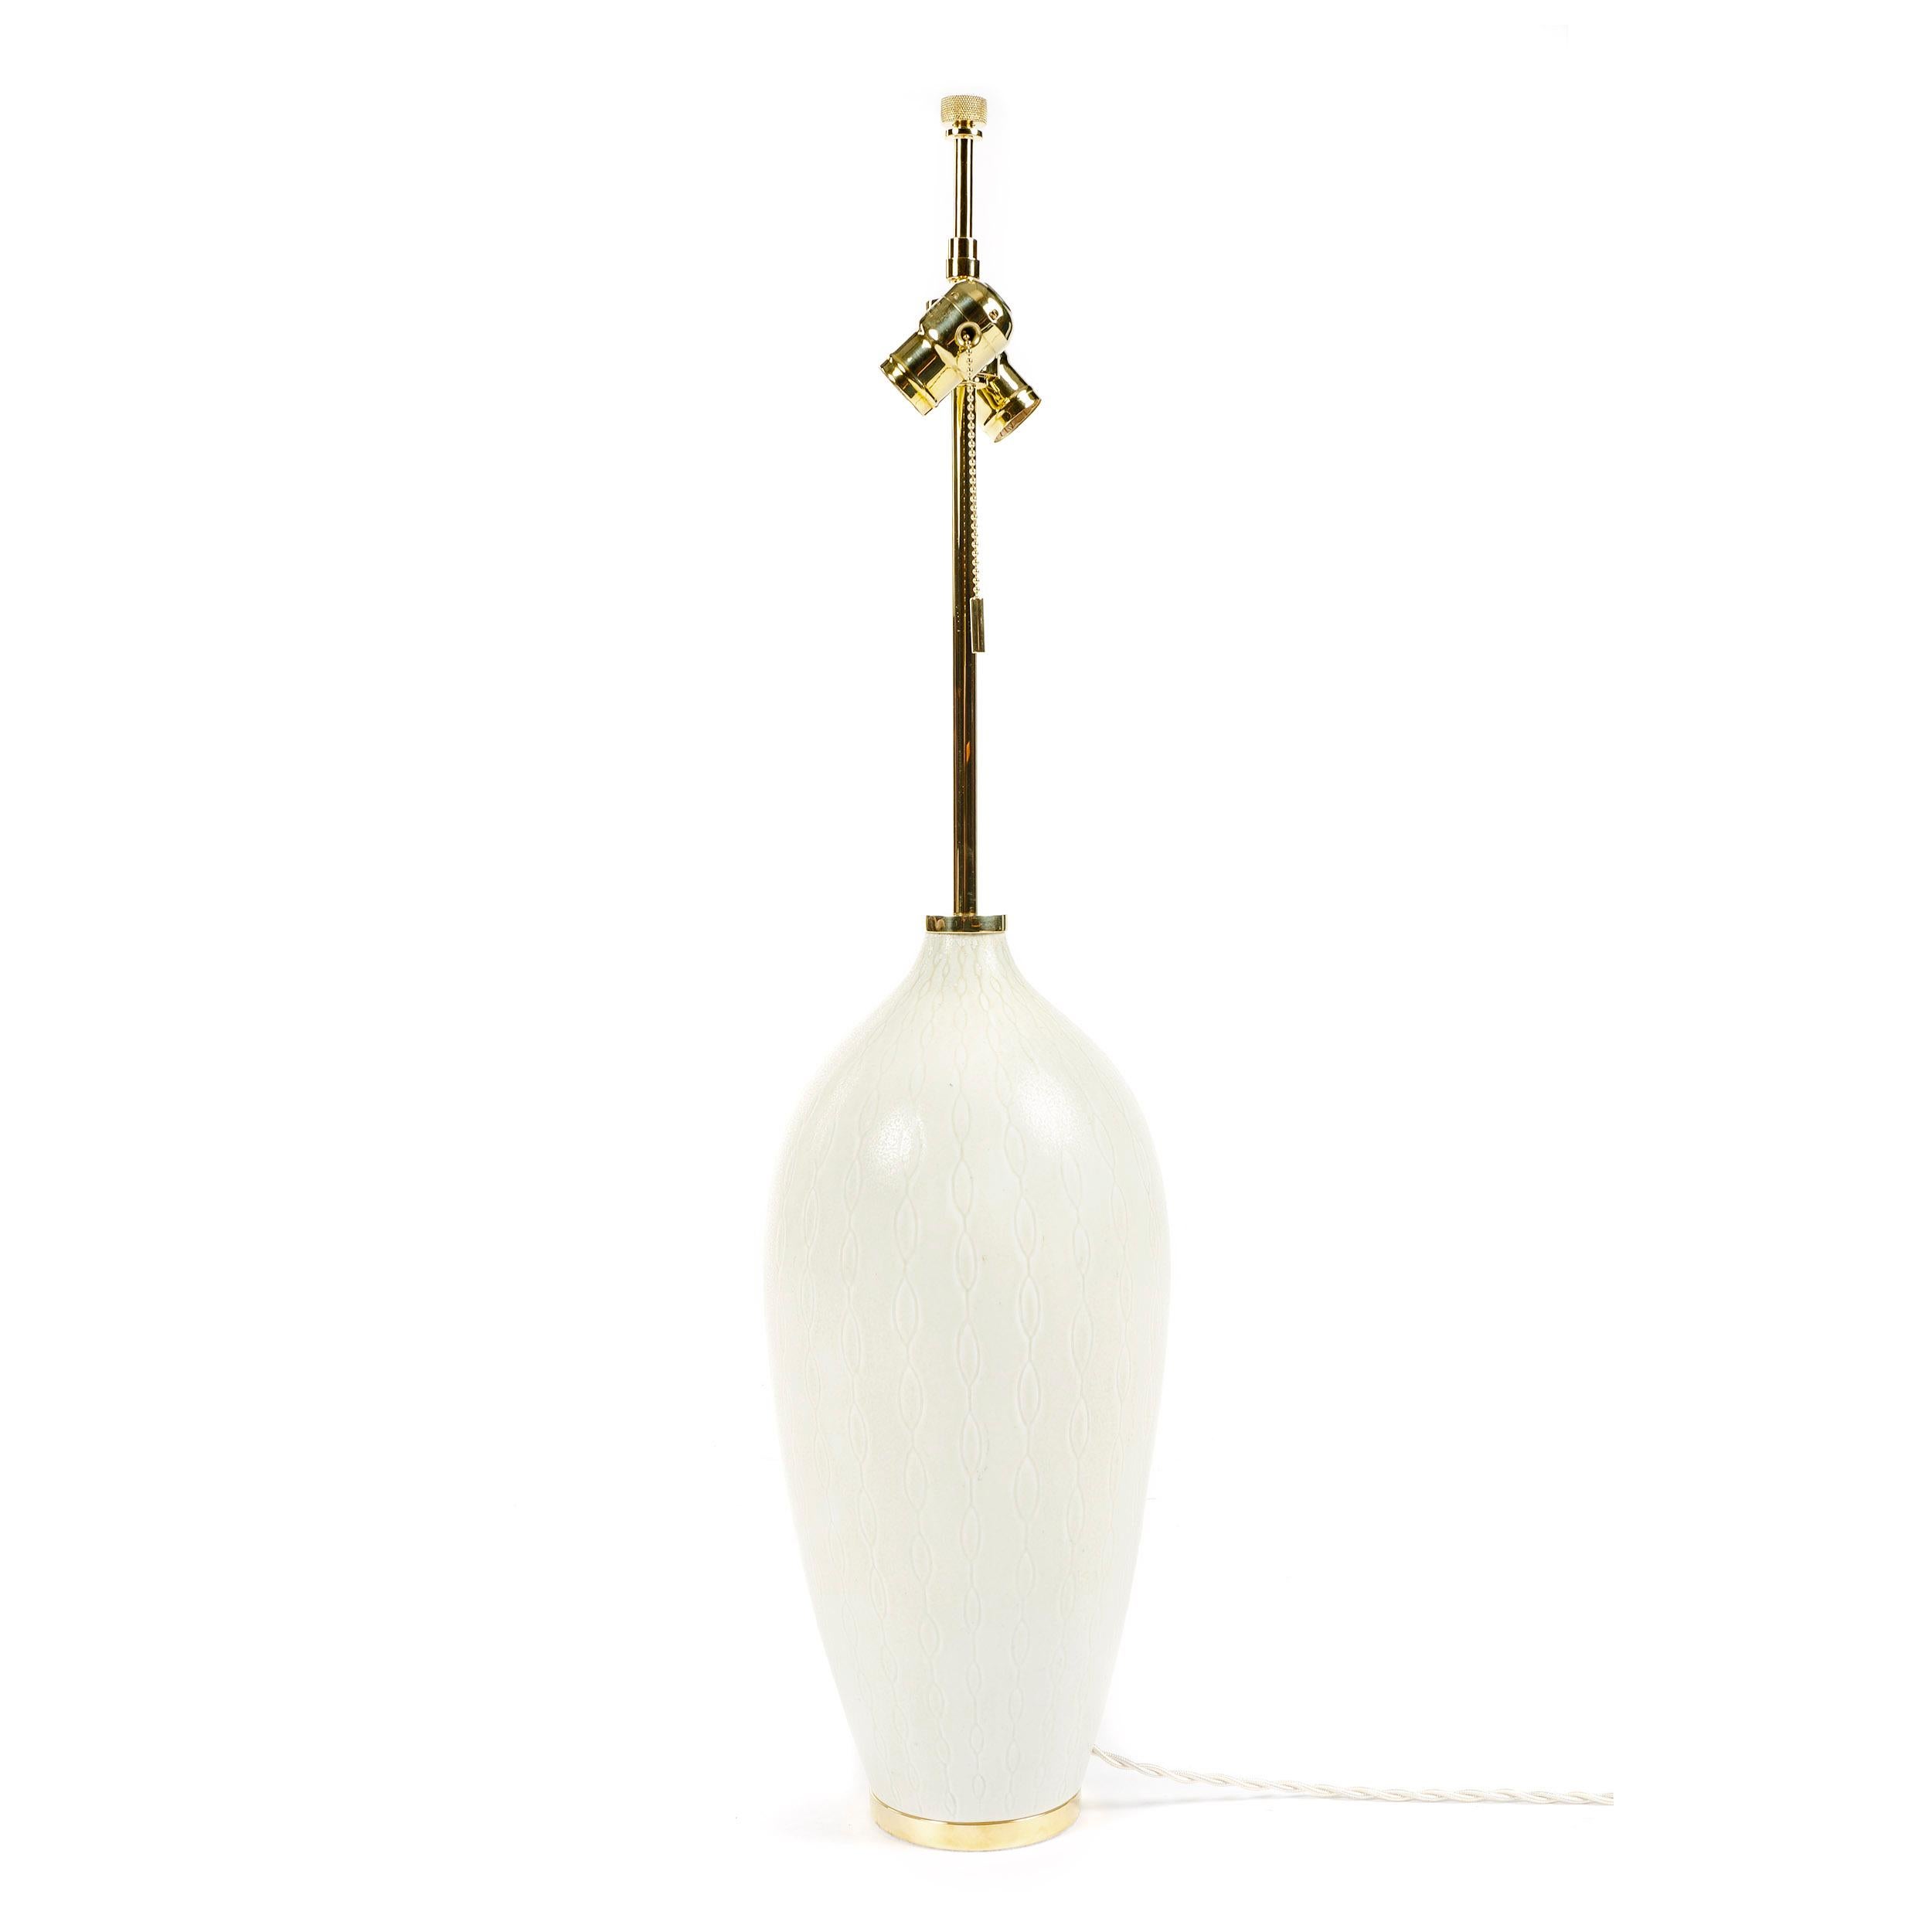 Monumentale lampe de table en grès Rorstrand du maître céramiste suédois Carl Harry Stalhane. Le corps en grès blanc présente une glaçure mate blanc cassé modelée avec un motif répétitif sous glaçure consistant en une série verticale d'ovales